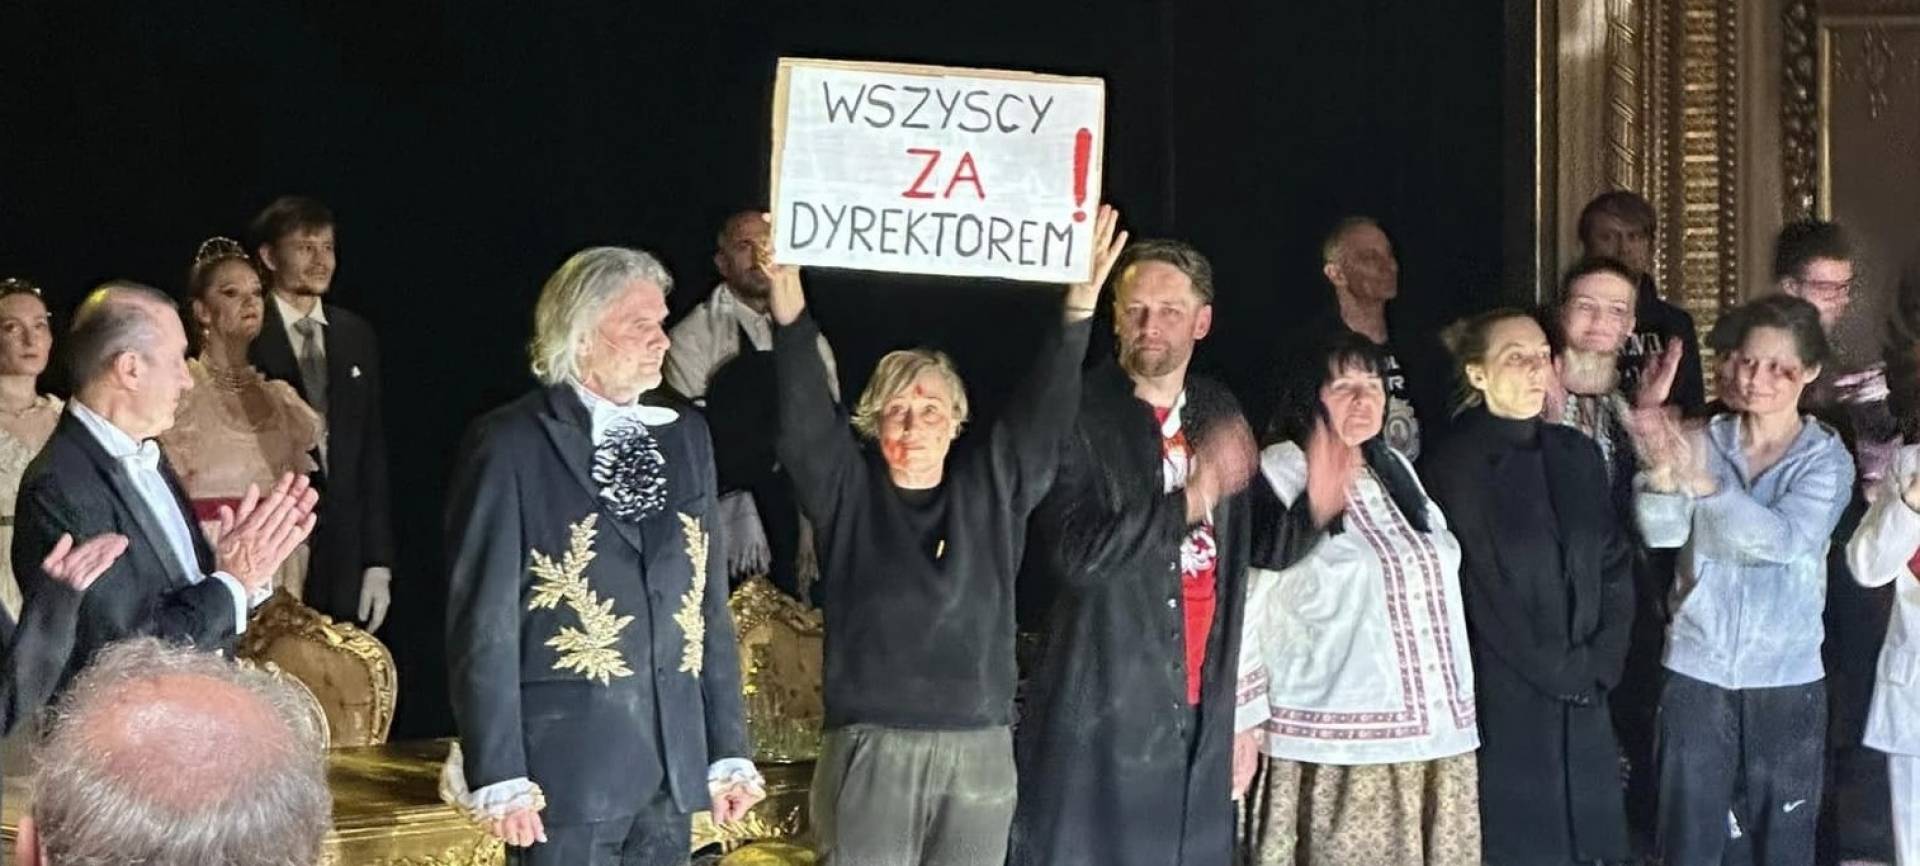 Protesty odniosły skutek! Konkurs na dyrektora Słowaka unieważniony